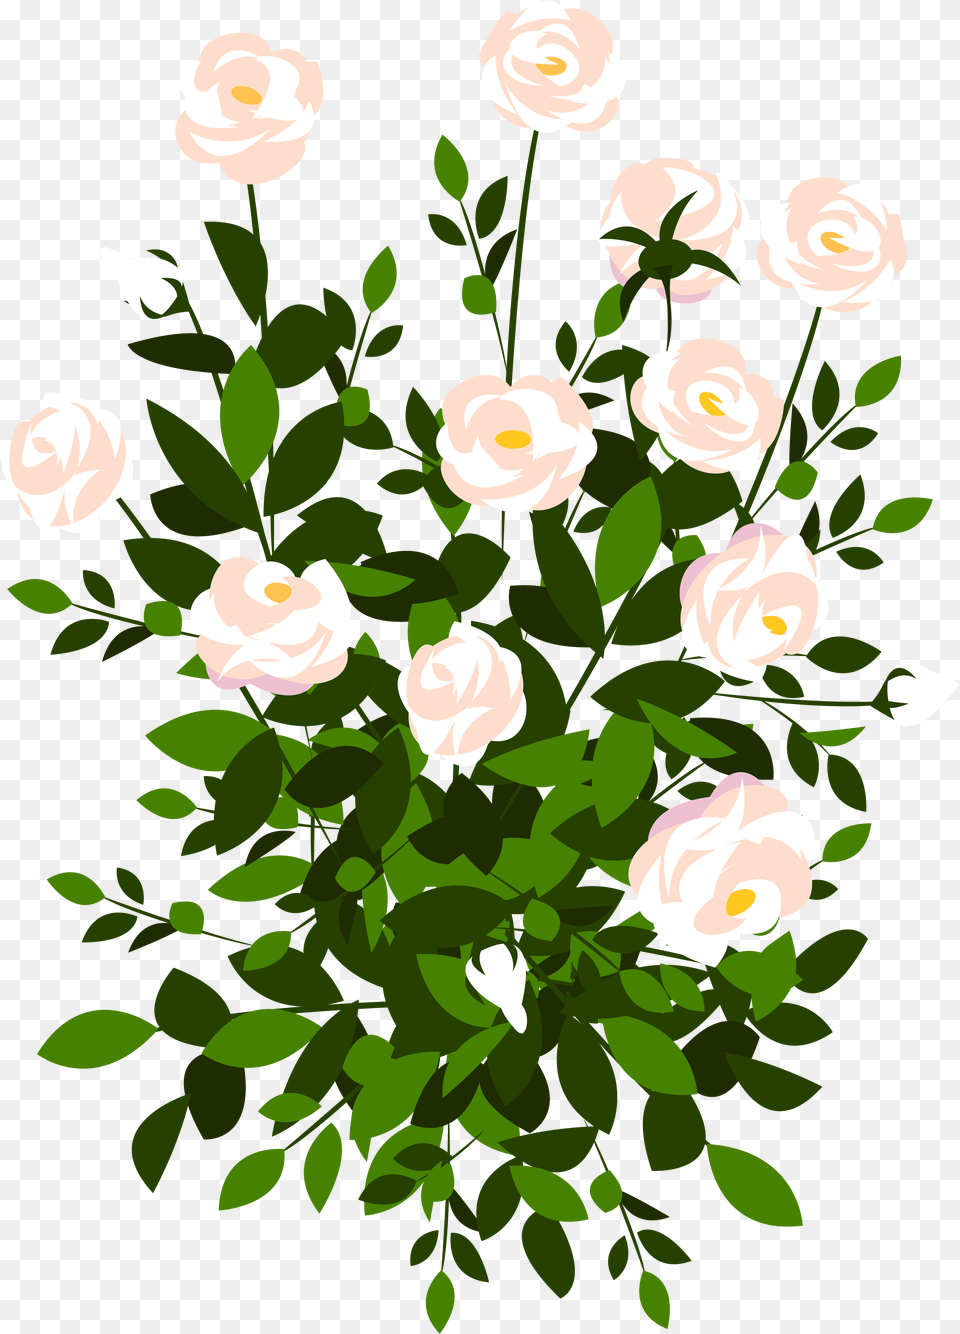 Whte Rose Bush Clipart Picture Rose Bush Clipart, Flower, Plant, Art, Floral Design Free Transparent Png